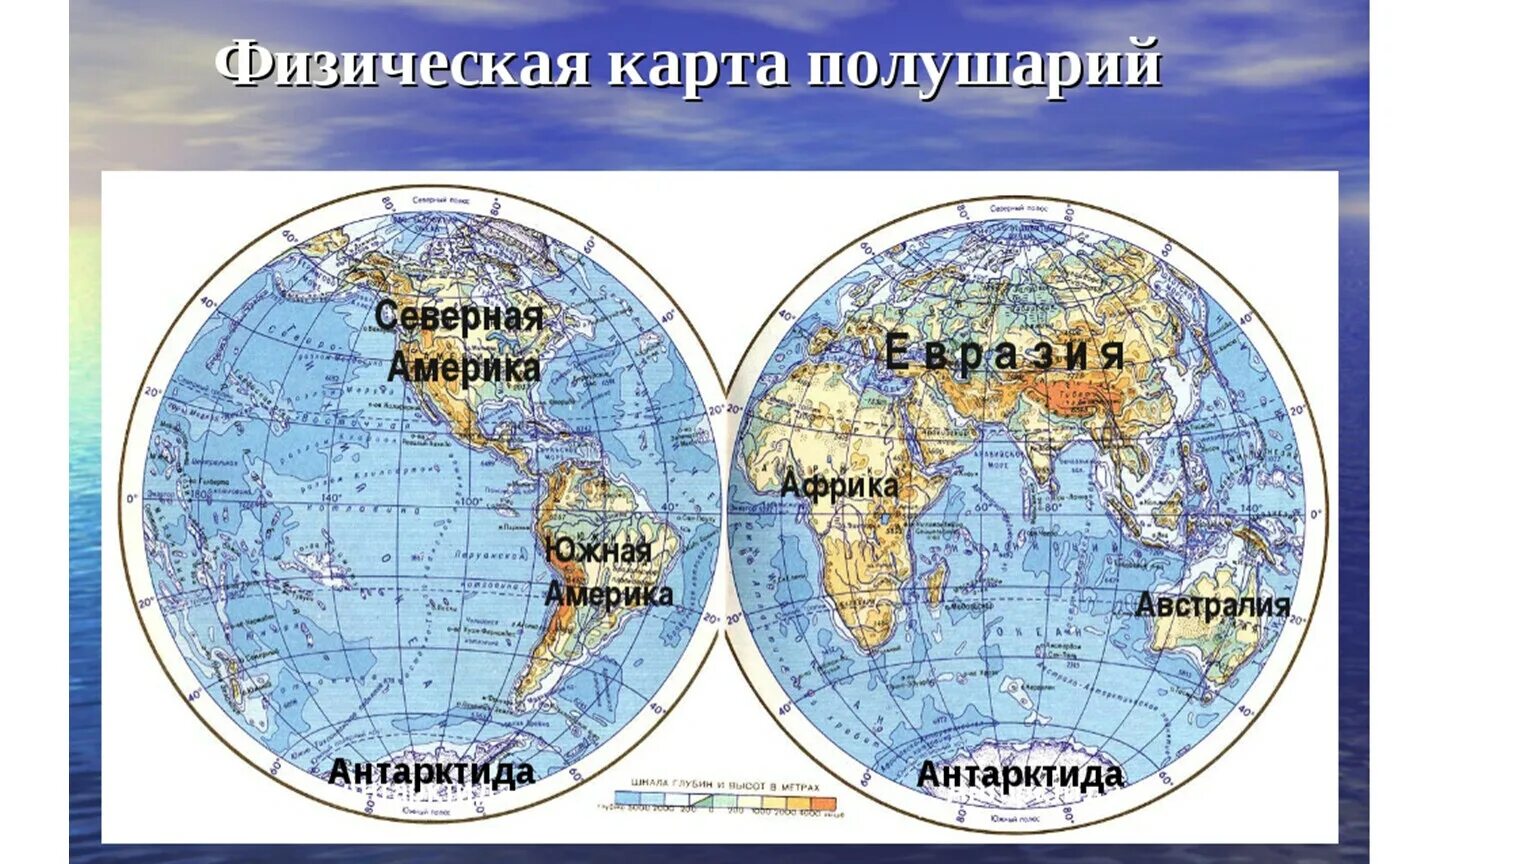 Какой океан в южном полушарии. Расположение материков и океанов на карте полушарий. Карта полушарий с материками и Океанами. Карта полушарий земли с материками. Карта полушарий с материками и Океанами крупно.